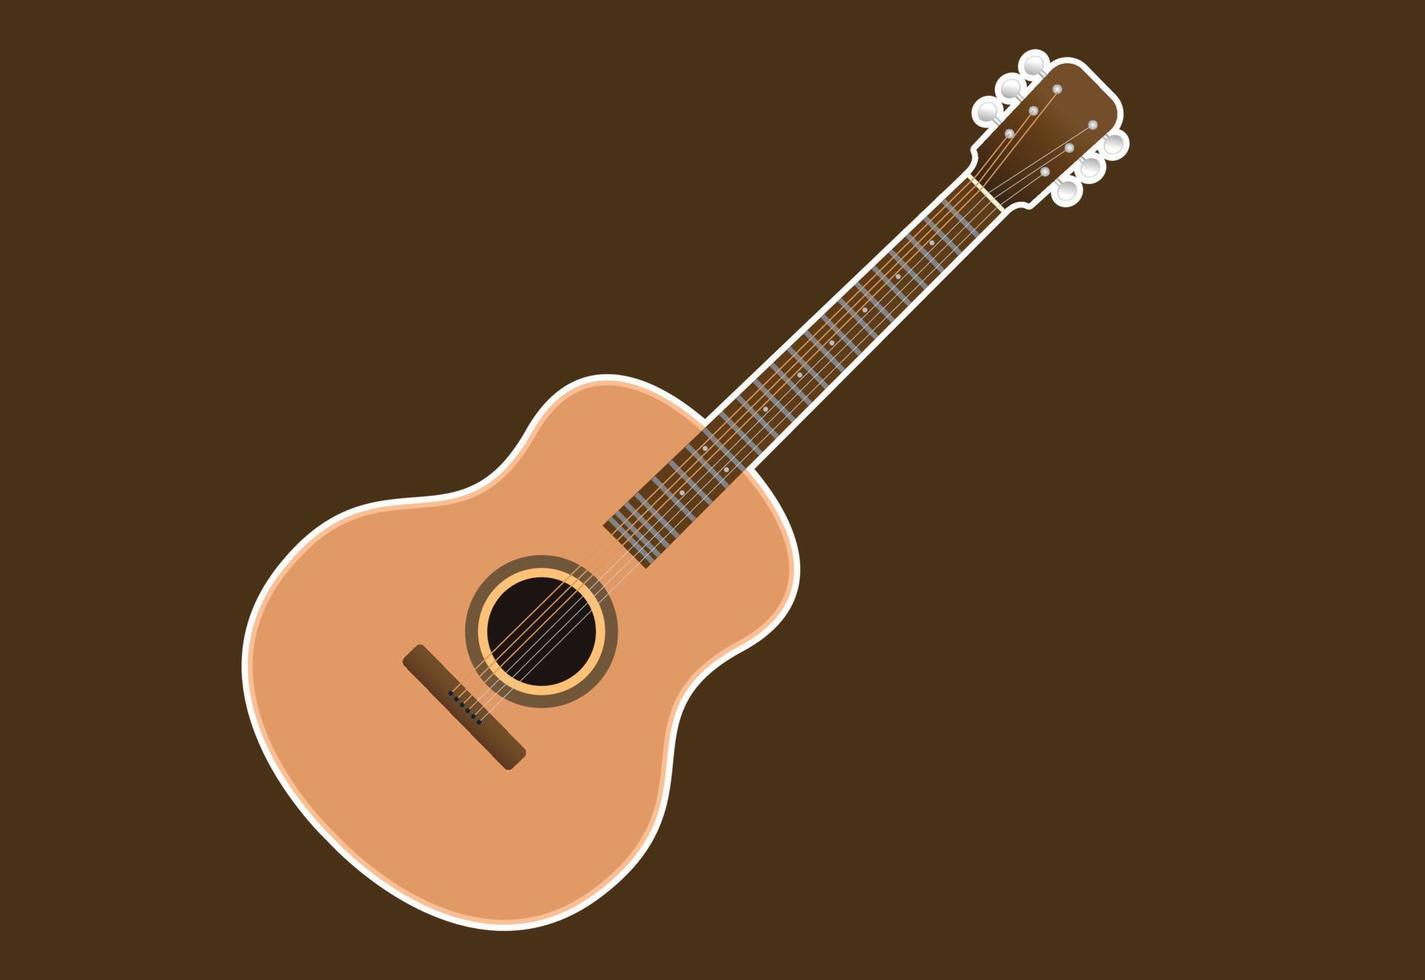 guitarra acústica, aislada en fondo blanco, utilizada para tocar música y notas, ilustración vectorial. vector